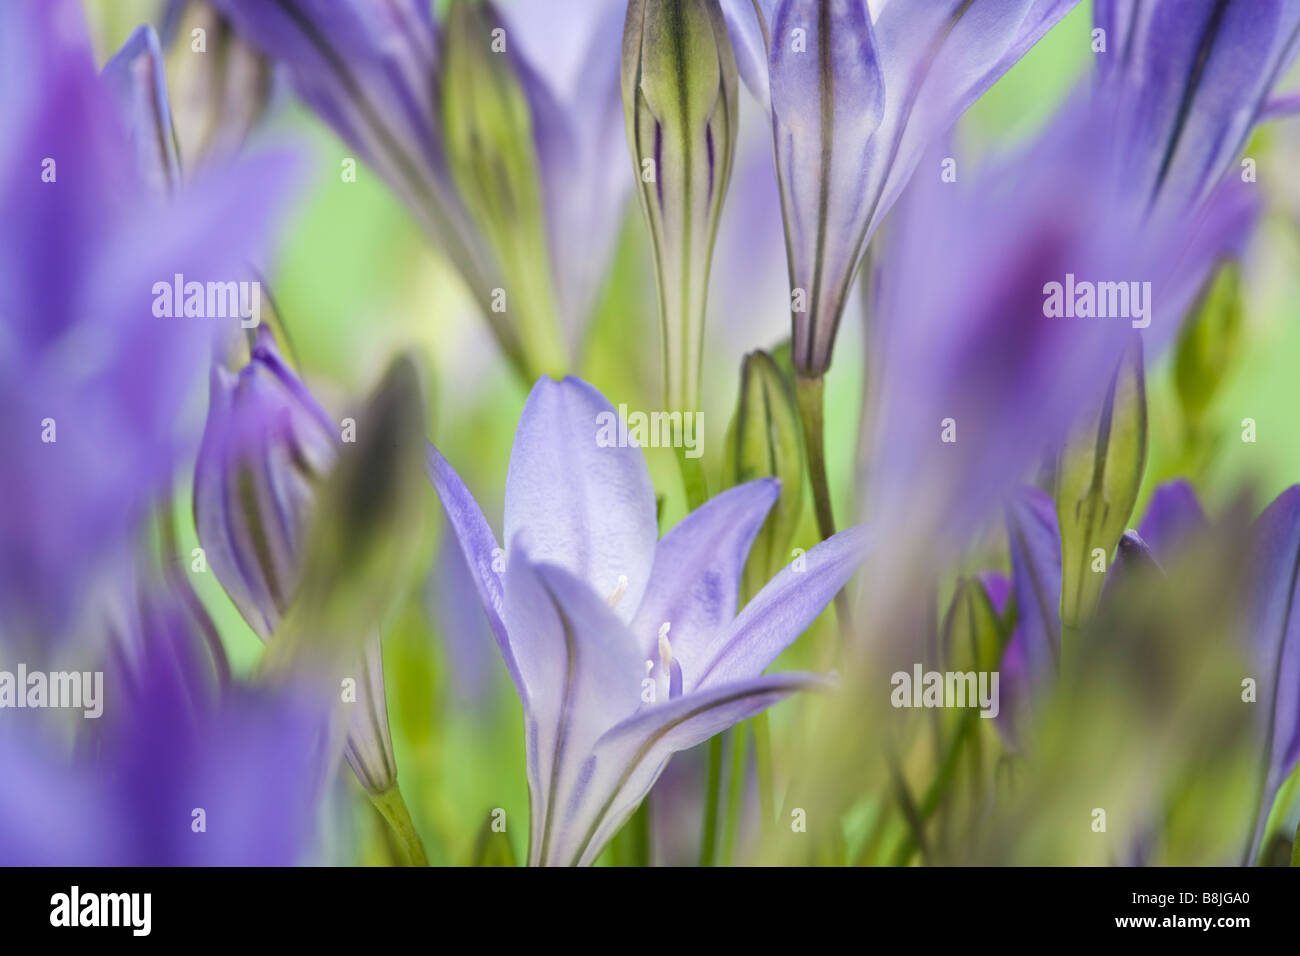 Le Triteleia laxa ou Brodiaea laxa fleurs bleu-violet pâle dressées en close up doucement teintée selective focus Banque D'Images